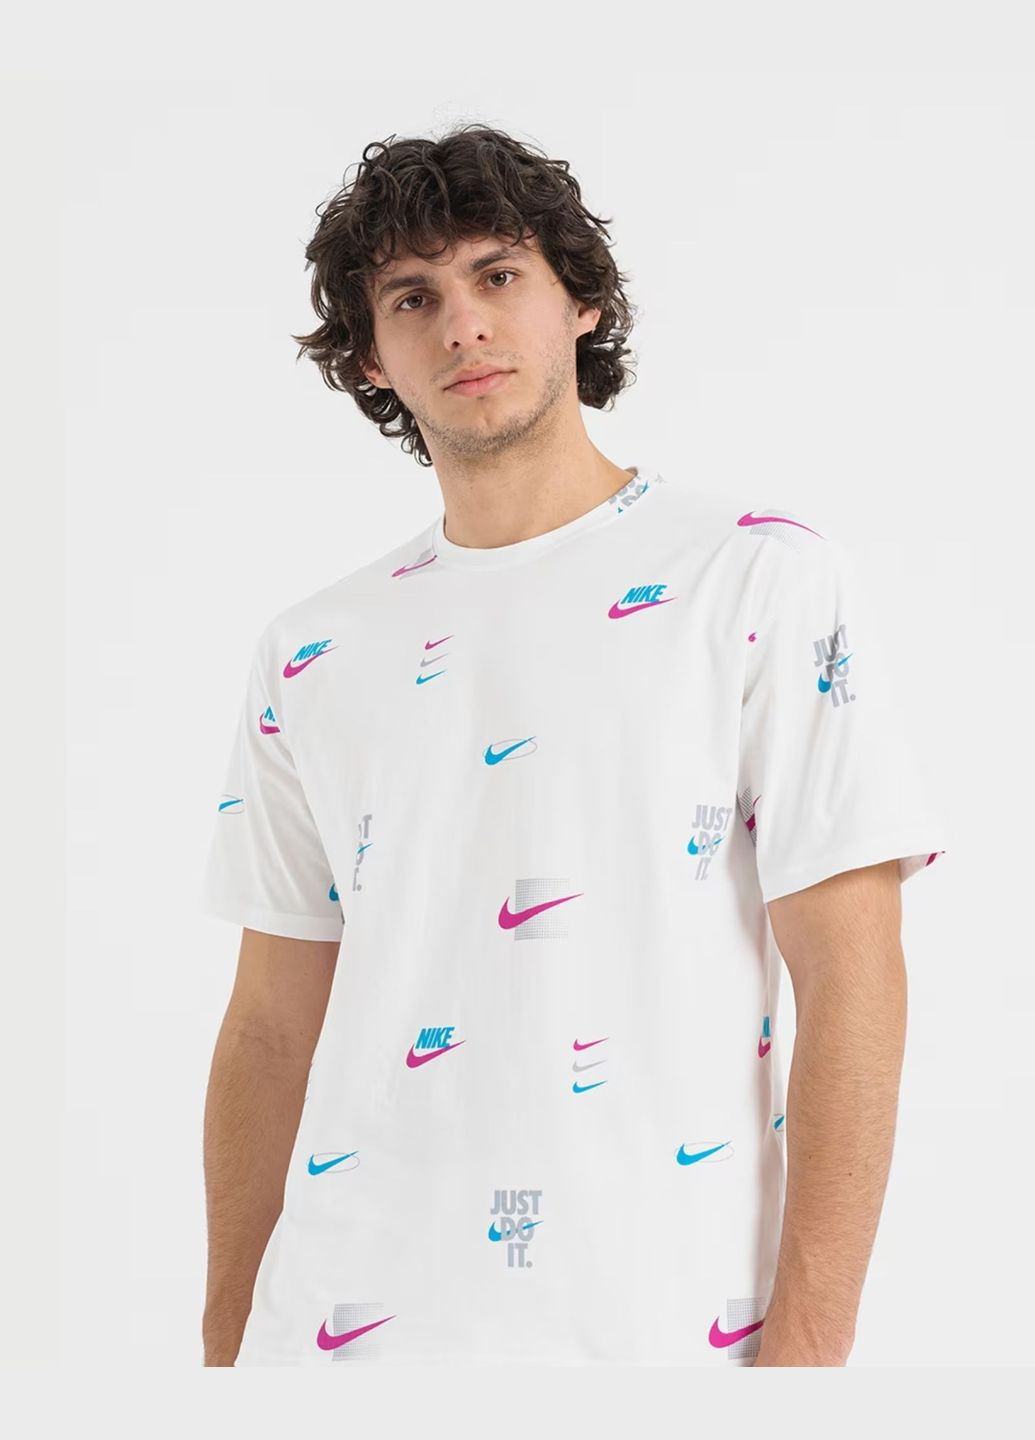 Белая футболка мужская tee m90 12mo lbr aop dz2991-100 белая Nike